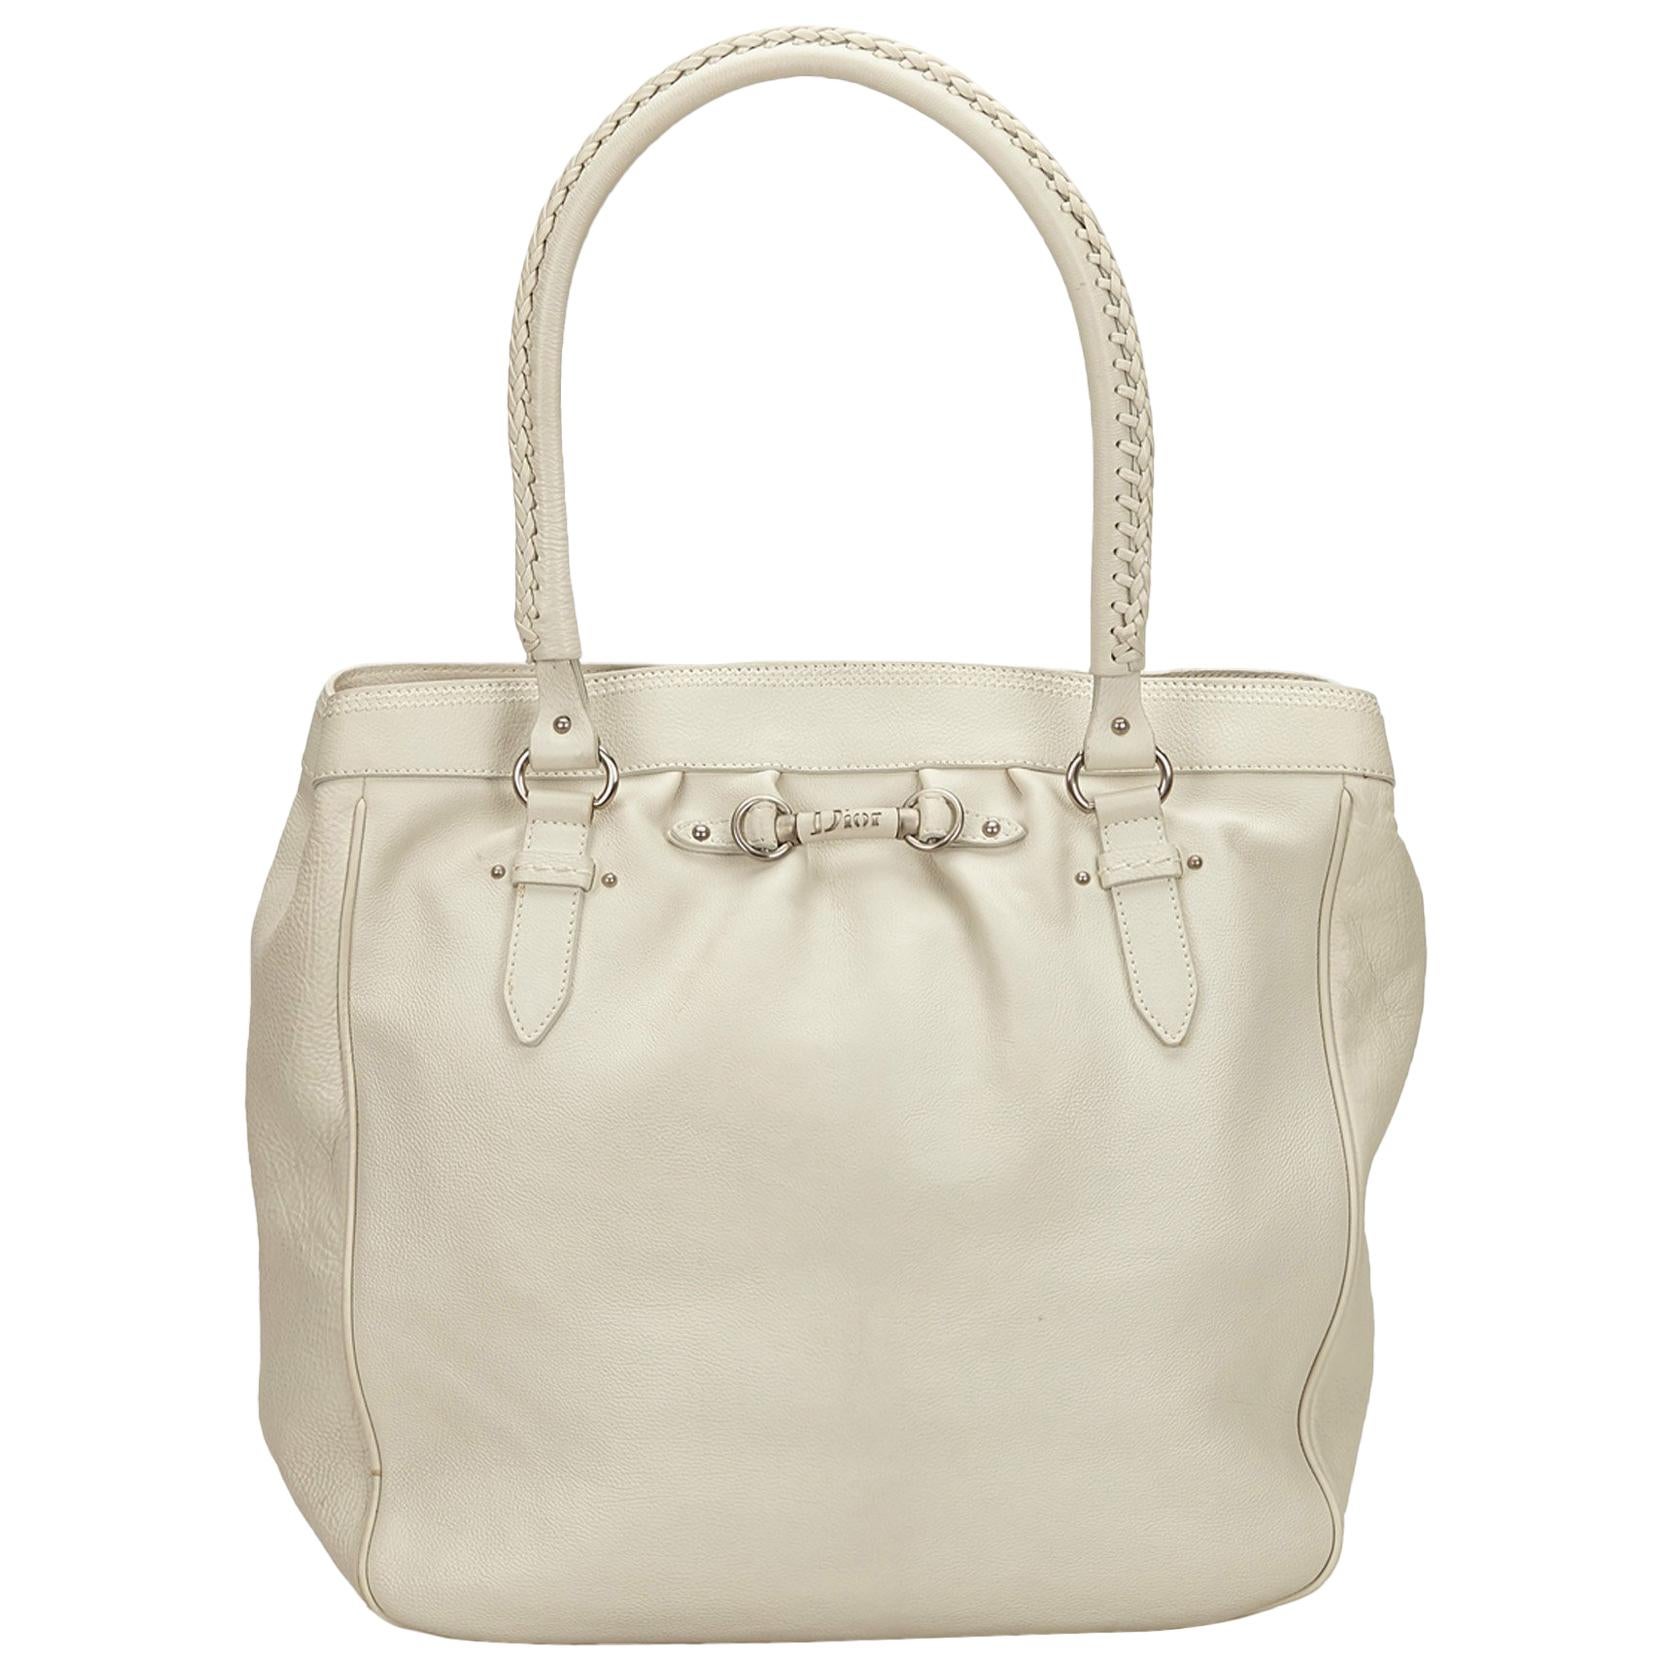 Dior White Leather Tote Bag